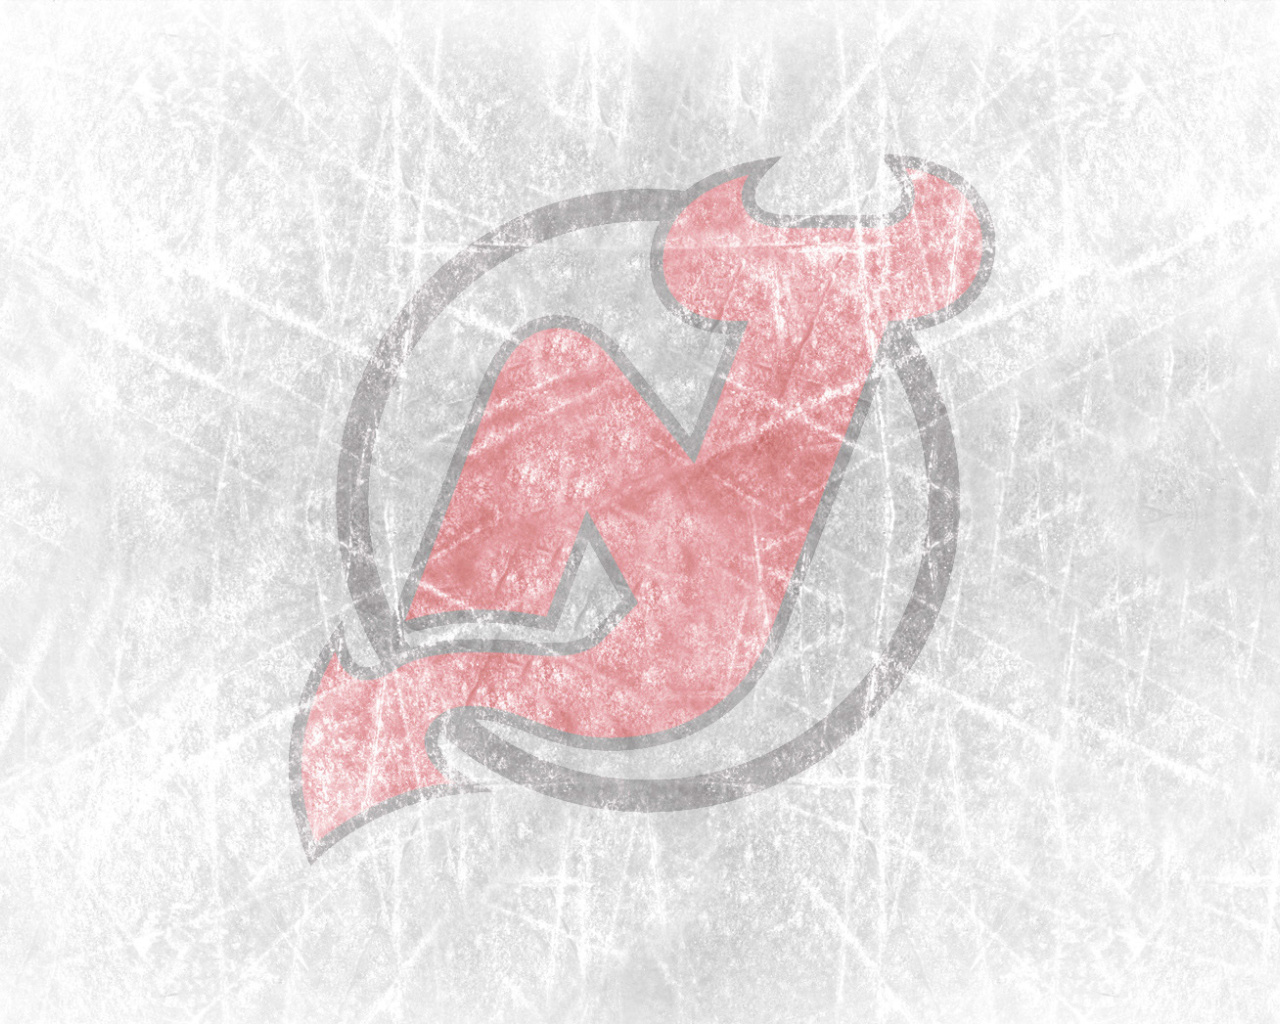 New Jersey Devils Hockey Team wallpaper 1280x1024